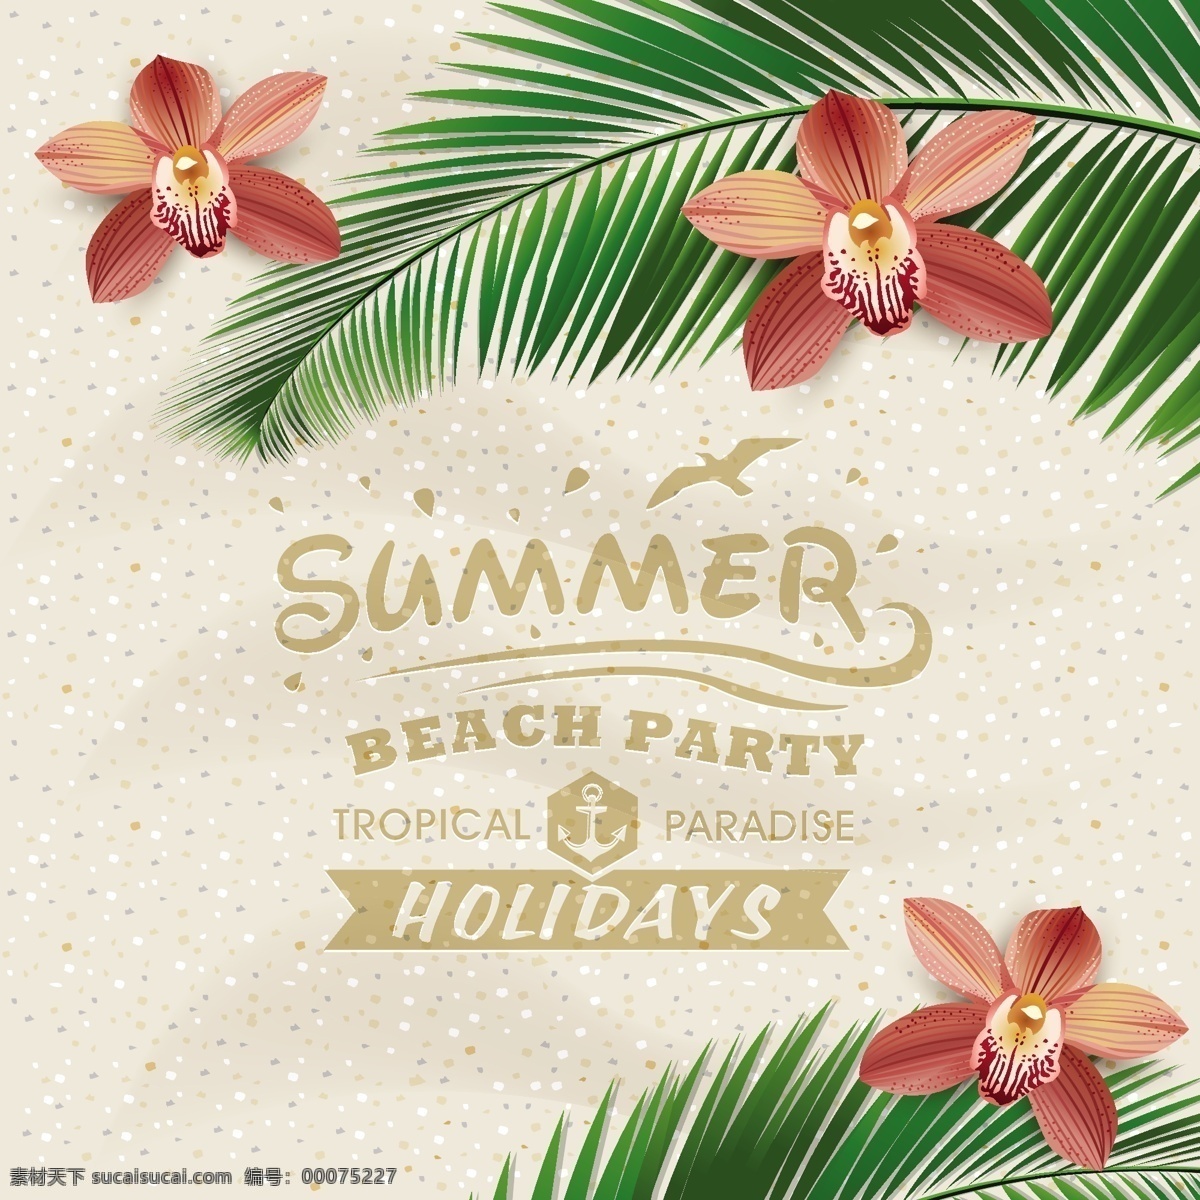 夏日 沙滩 度假 海报 矢量 海边 海鸥 蝴蝶兰 矢量素材 椰子树 其他海报设计